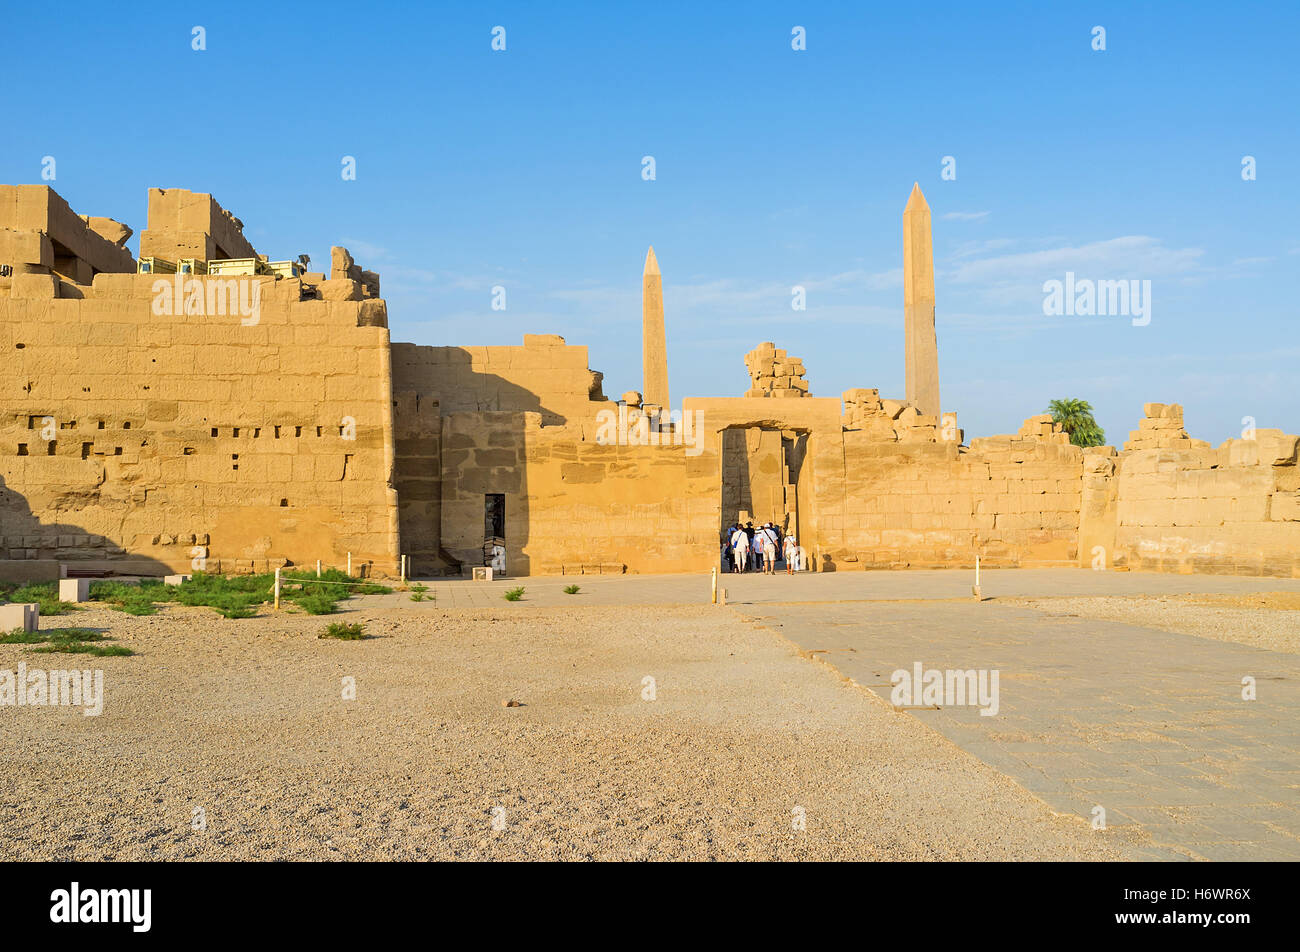 The side wall of the Karnak Temple hides two slender granite obelisks, Luxor, Egypt. Stock Photo